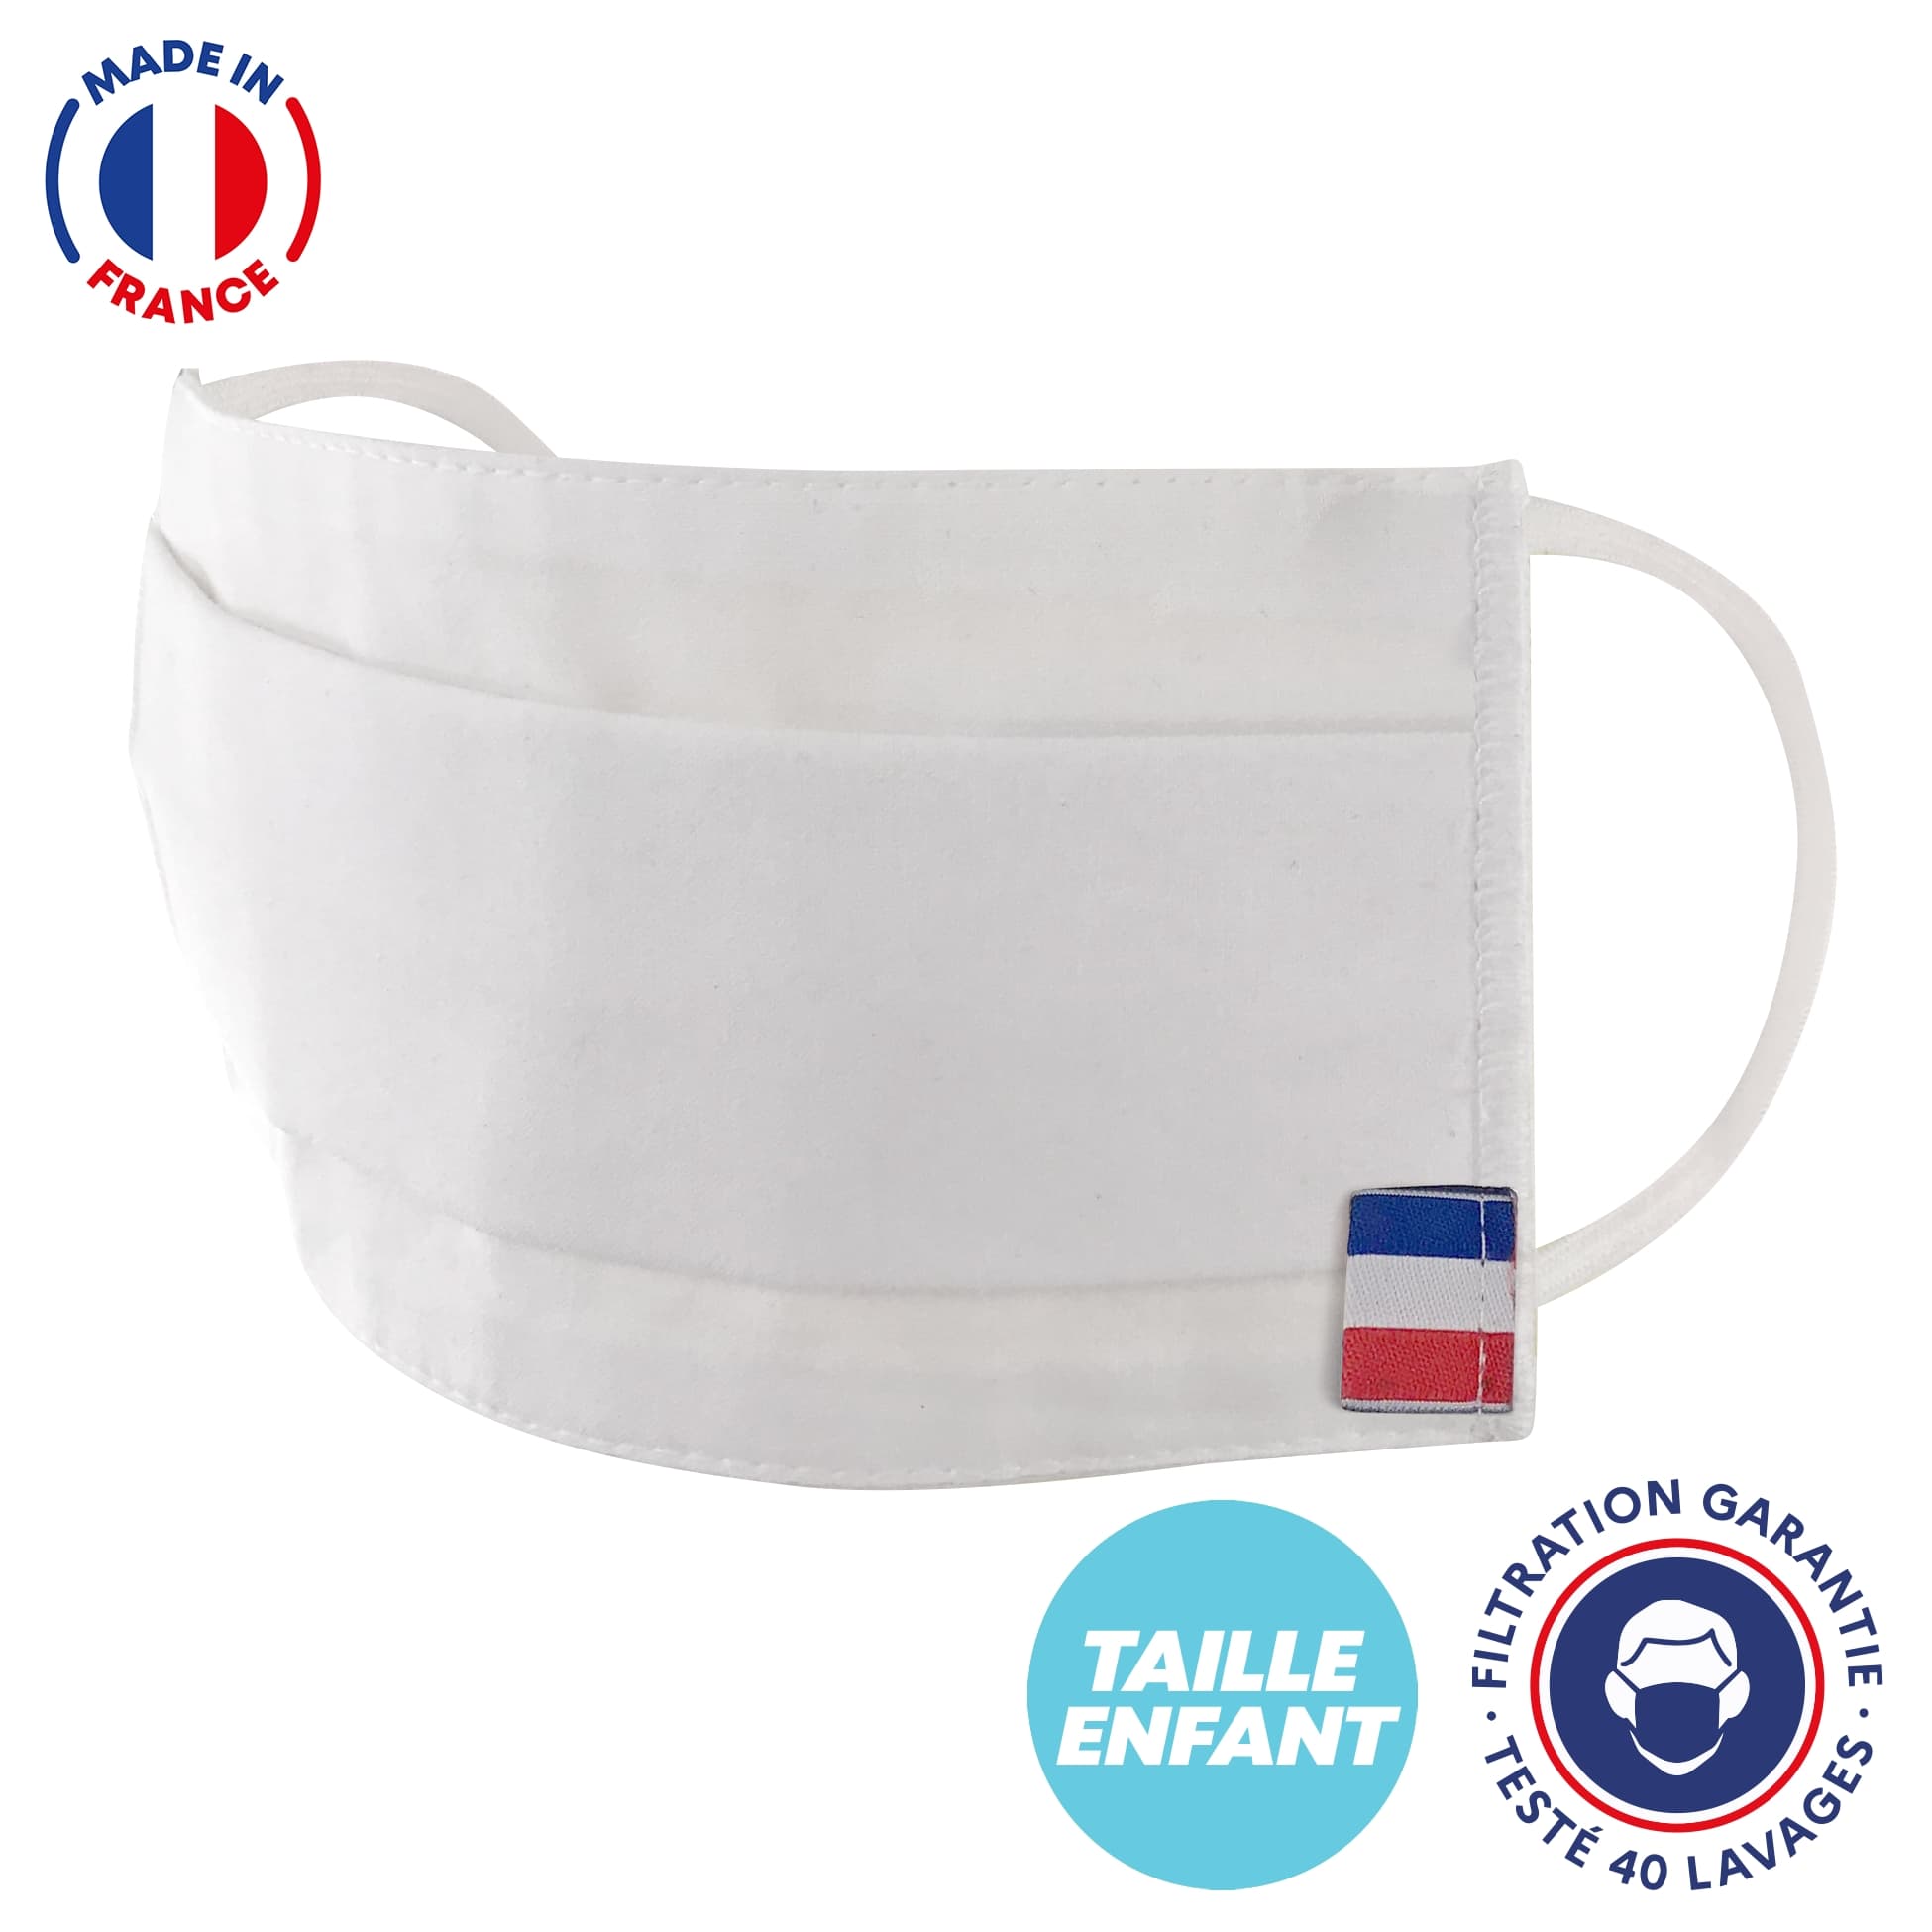 UNS1 40 lavages - Masque pour enfant en coton blanc